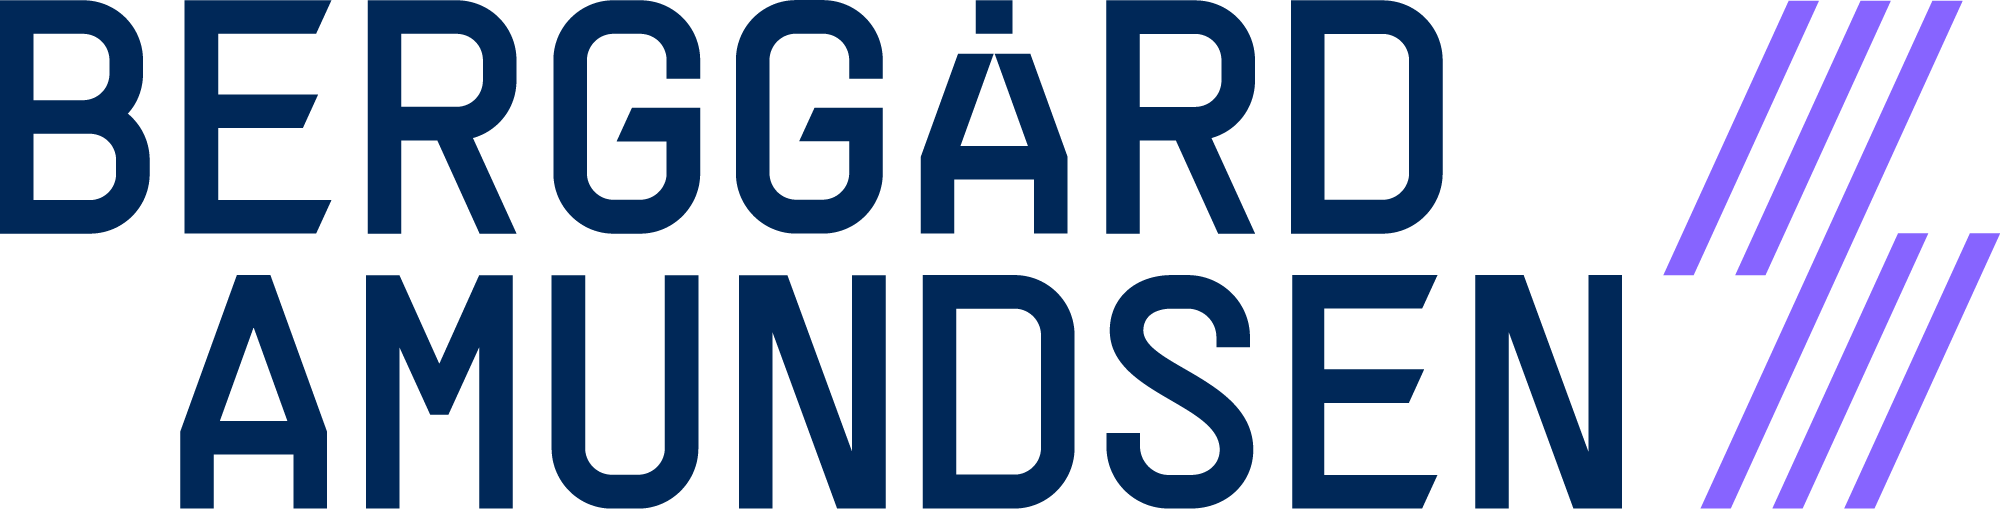 Logo - Berggaard Amundsen - Blaa.png